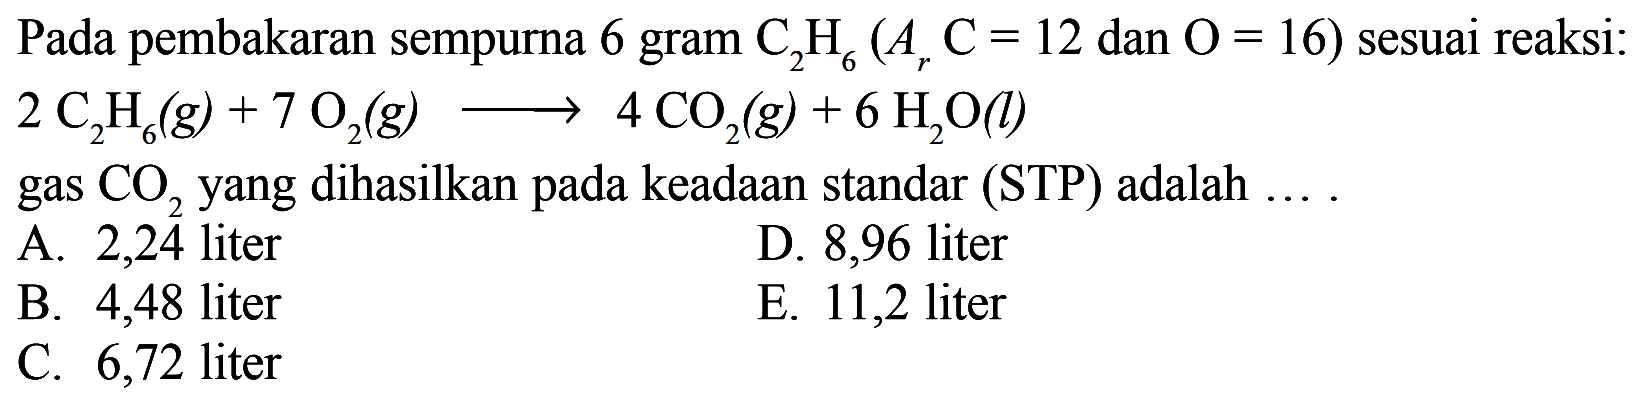 Pada pembakaran sempurna 6 gram C2H6 (Ar C=12 dan O=16) sesuai reaksi: 2 C2H6 (g)+7 O2 (g) -> 4 CO2 (g)+6 H2O (l) gas CO2 yang dihasilkan pada keadaan standar (STP) adalah ... A. 2,24 liter B. 4,48 liter C. 6,72 liter D. 8,96 liter E. 11,2 liter